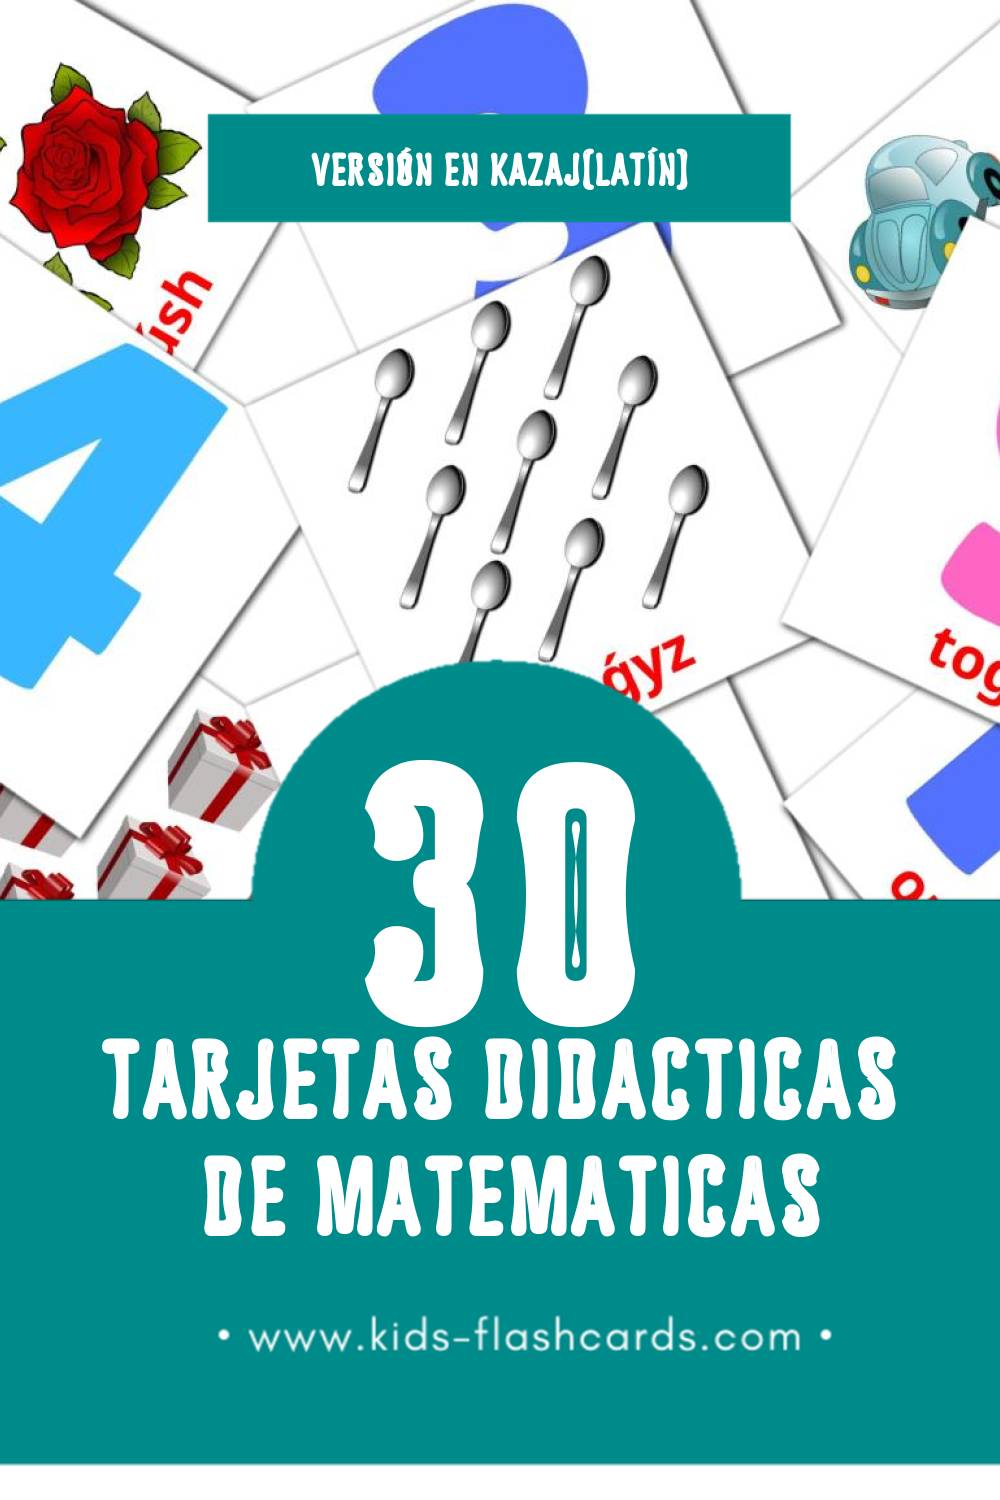 Tarjetas visuales de Matematıka para niños pequeños (30 tarjetas en Kazaj(latín))